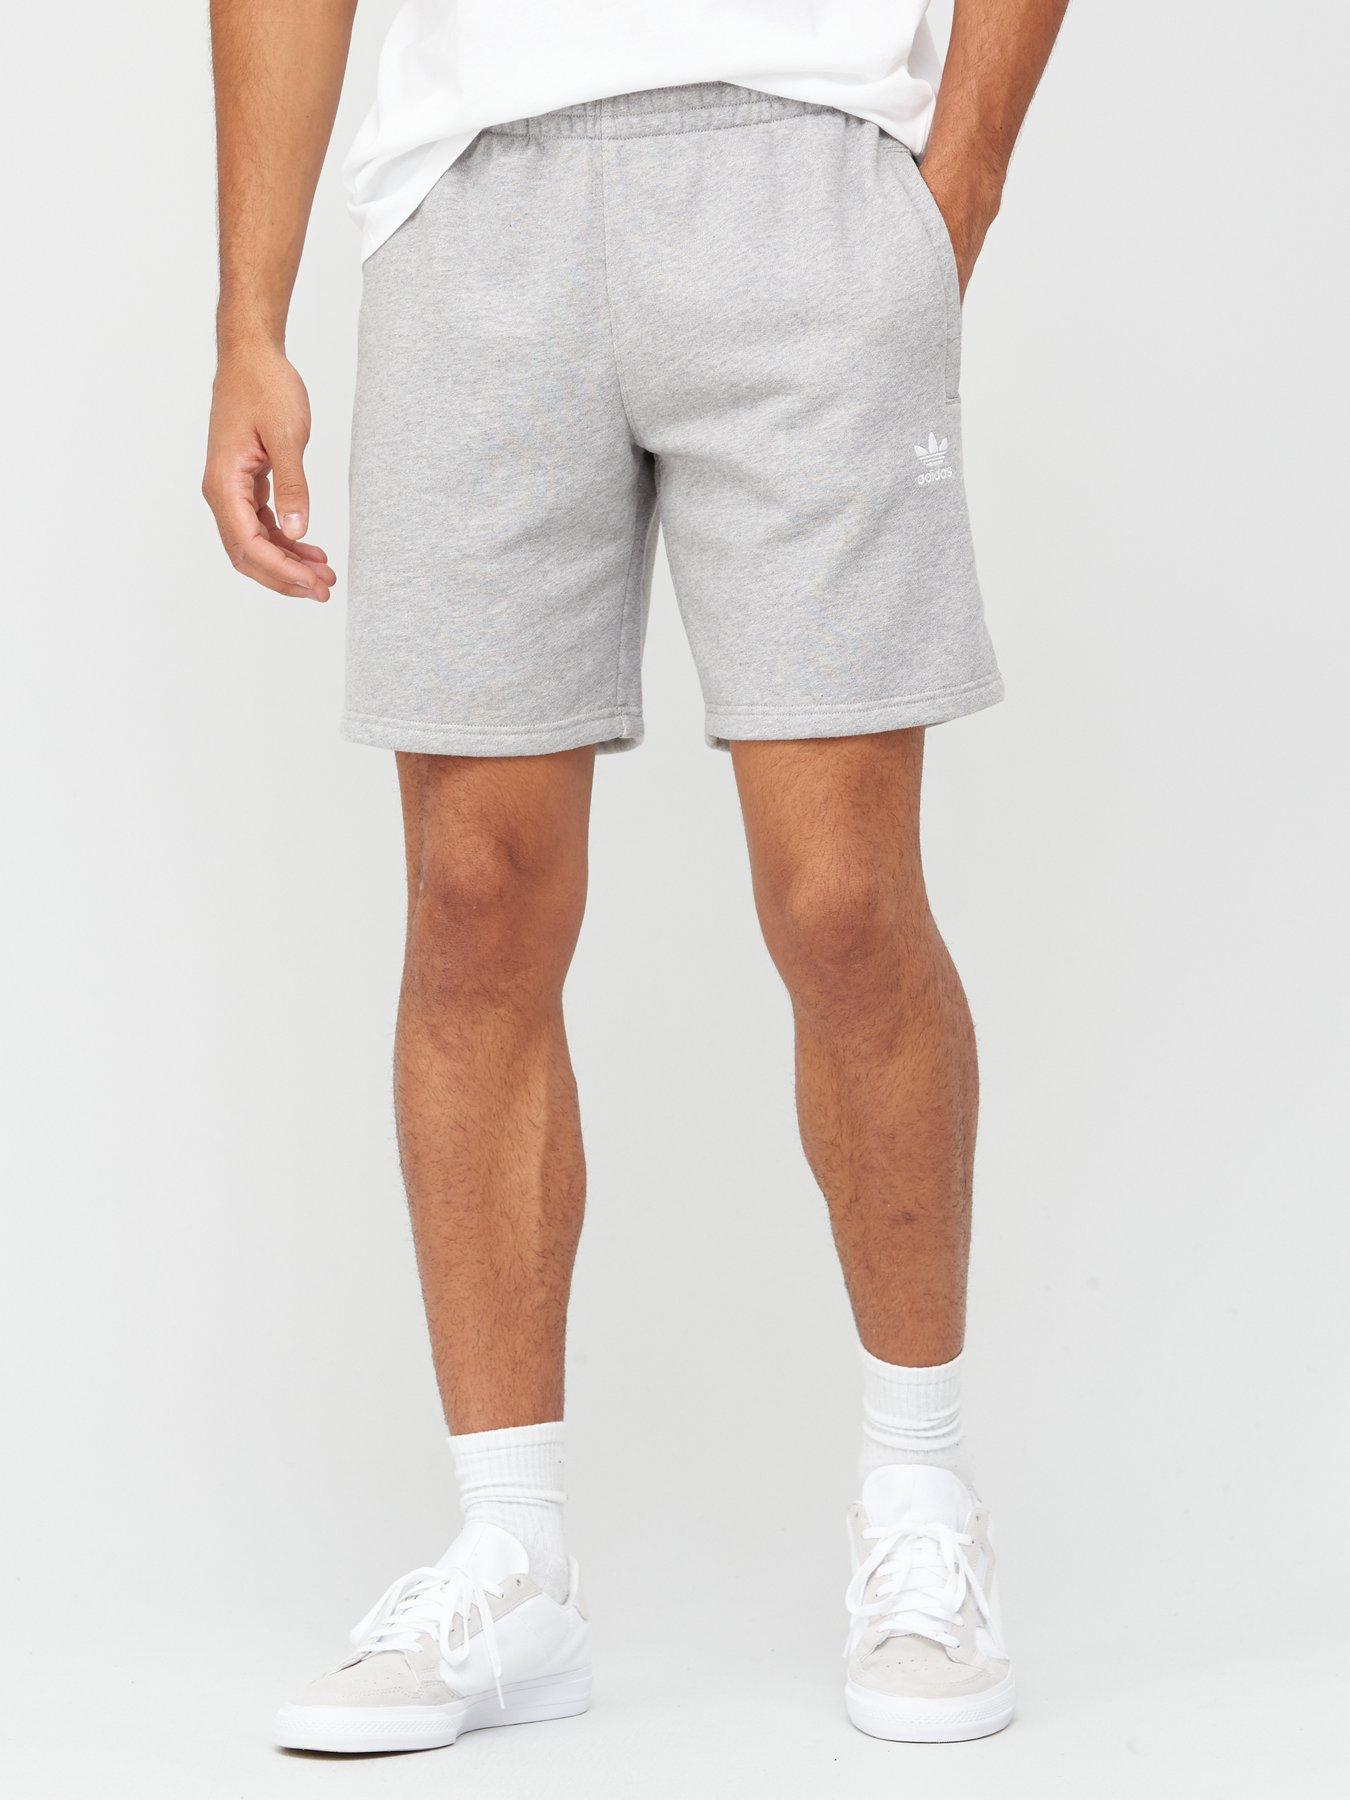 essential adidas shorts